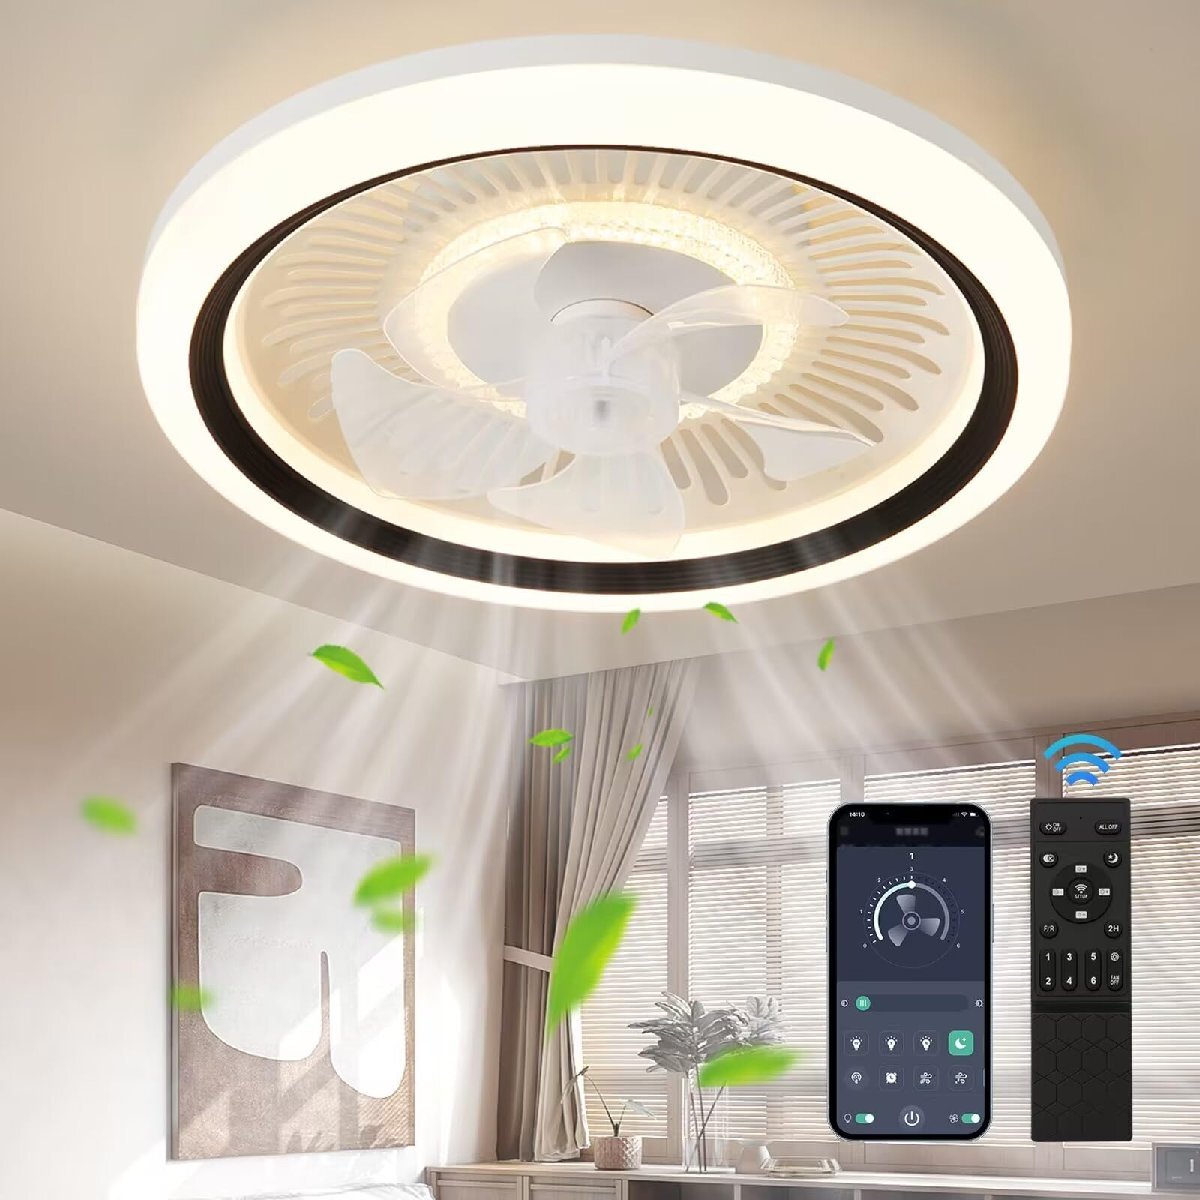 ZXhome потолочный вентилятор свет потолочный светильник вентилятор 50cm вентилятор APP дистанционный пульт .. функционирование LED потолок свет днем свет цвет днем белый цвет лампа цвет 